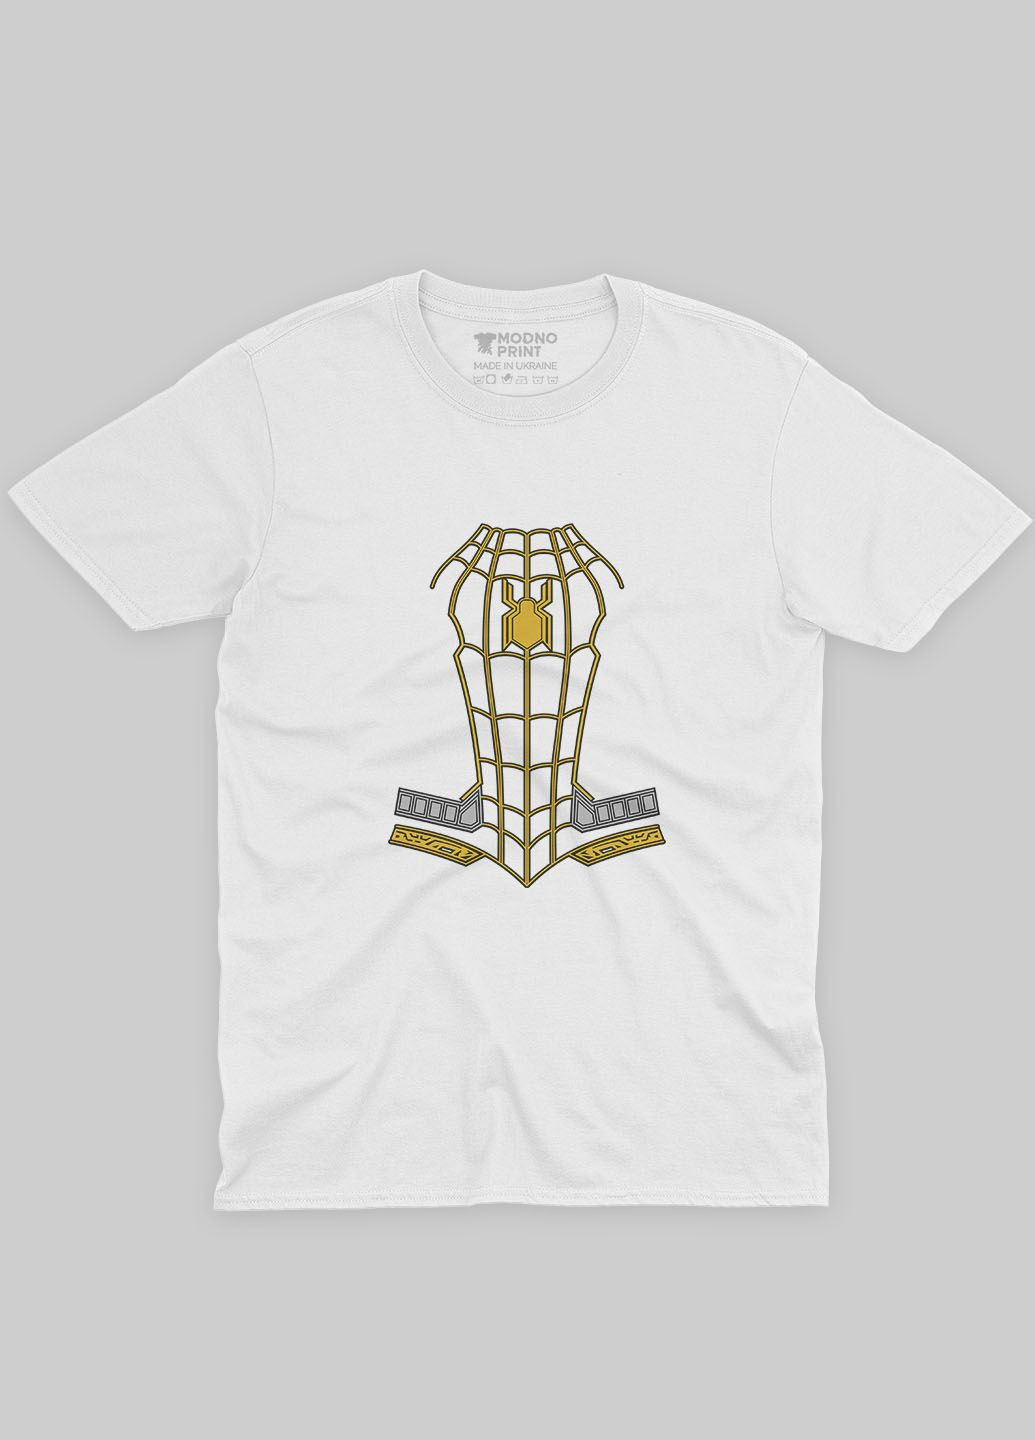 Белая демисезонная футболка для девочки с принтом супергероя - человек-паук (ts001-1-whi-006-014-083-g) Modno